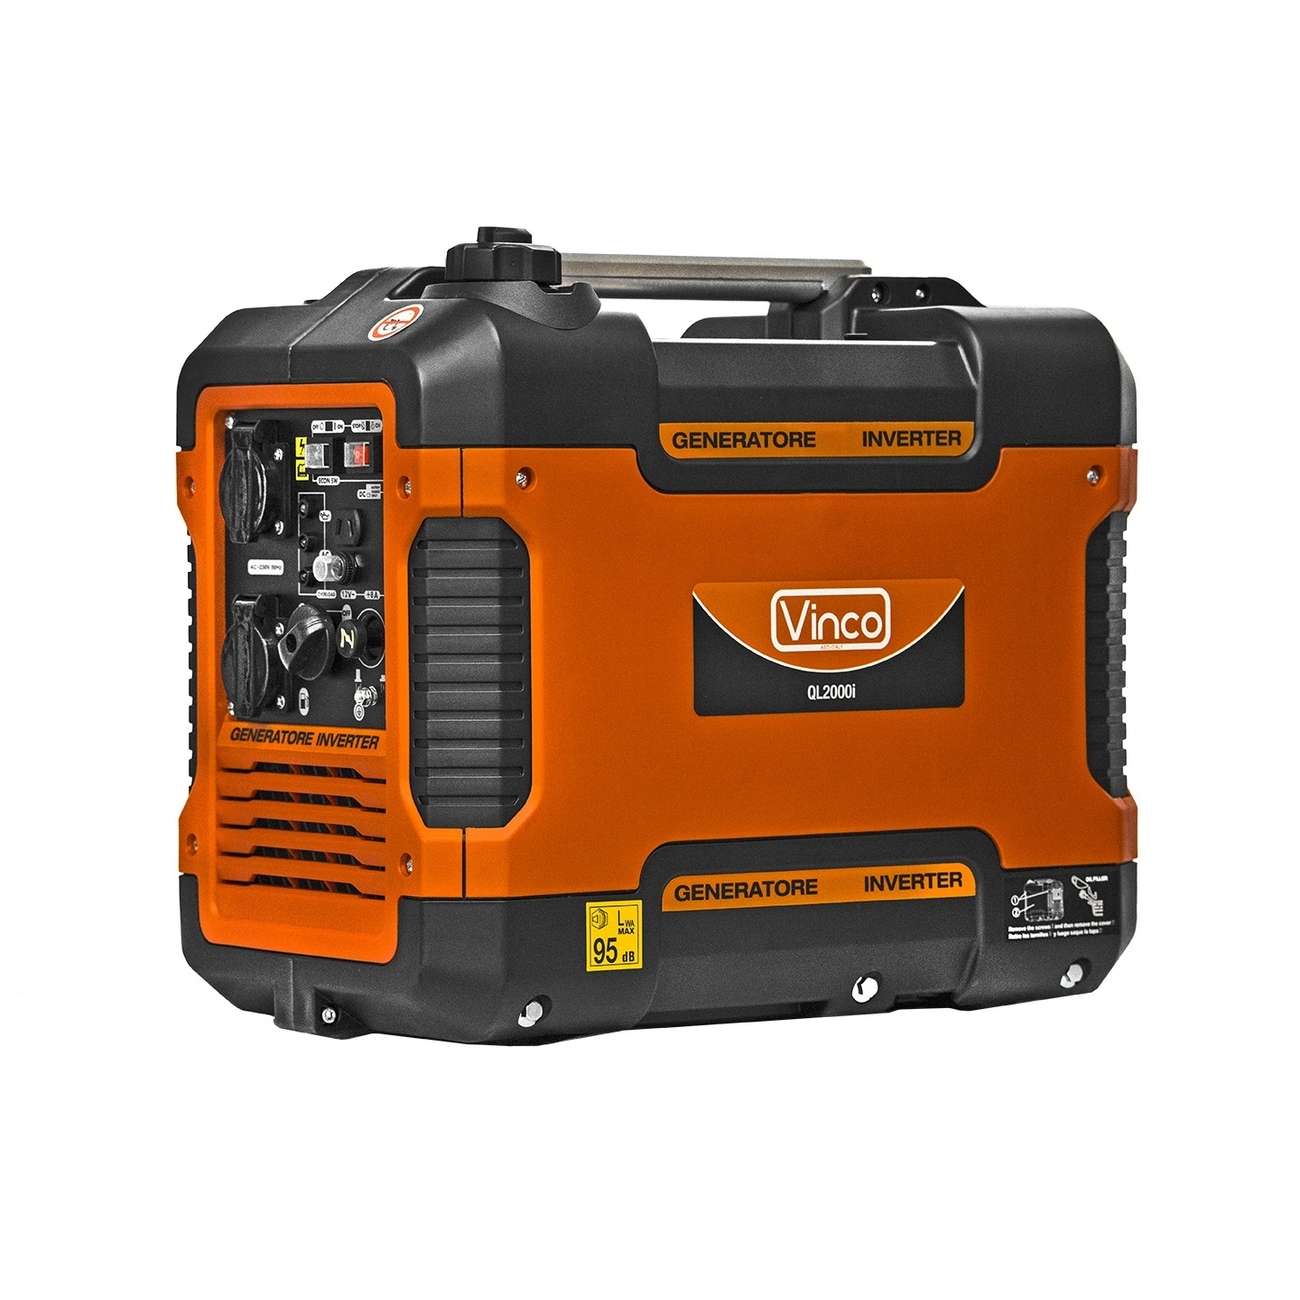 Generatore inverter Vinco 3 kw avv. elettrico